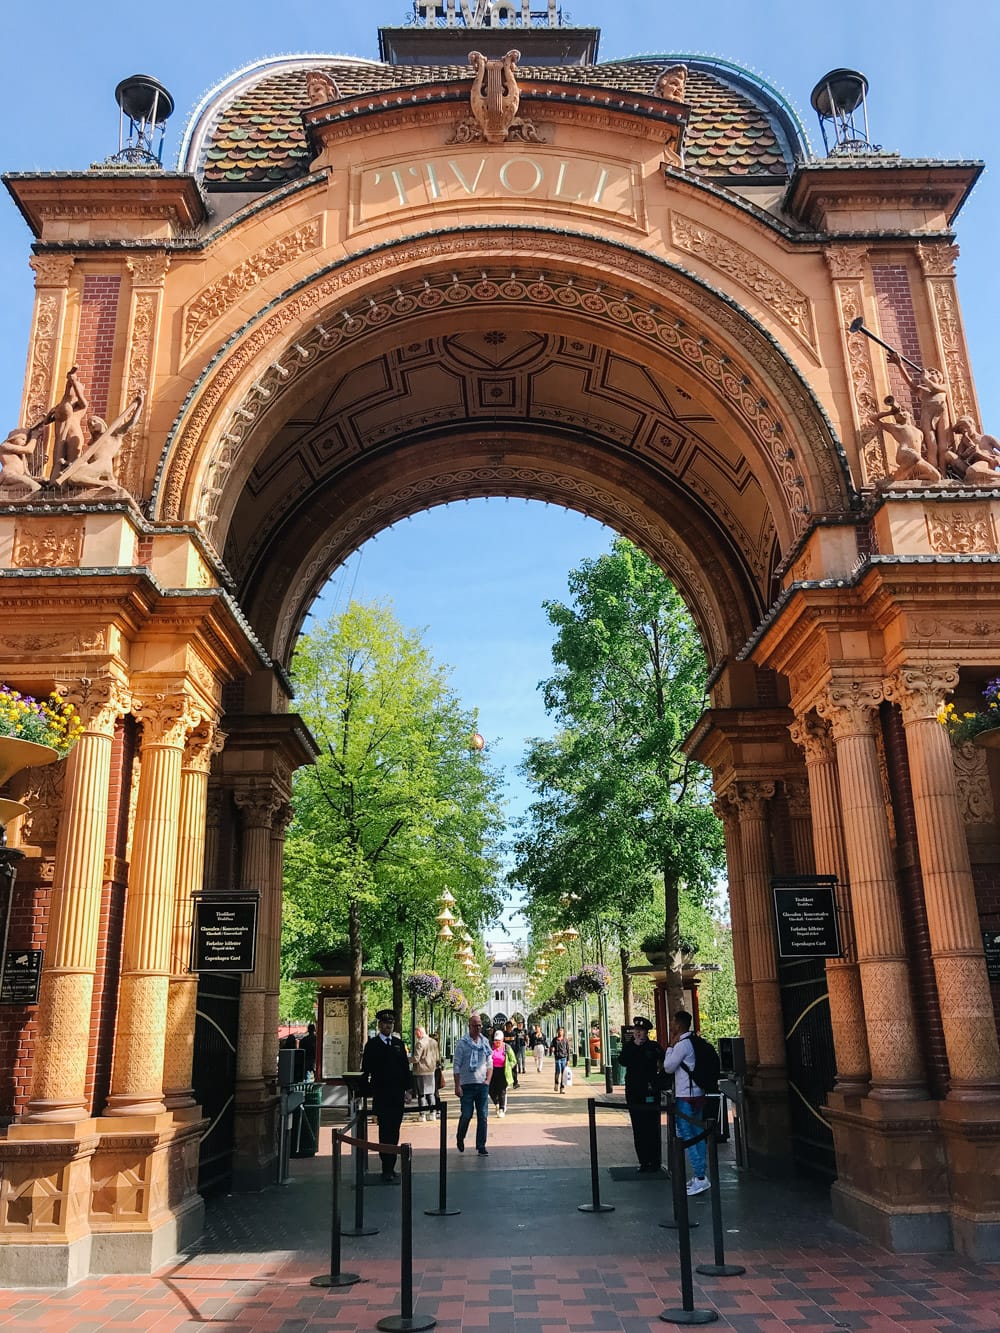 Entrance to Tivoli Gardens